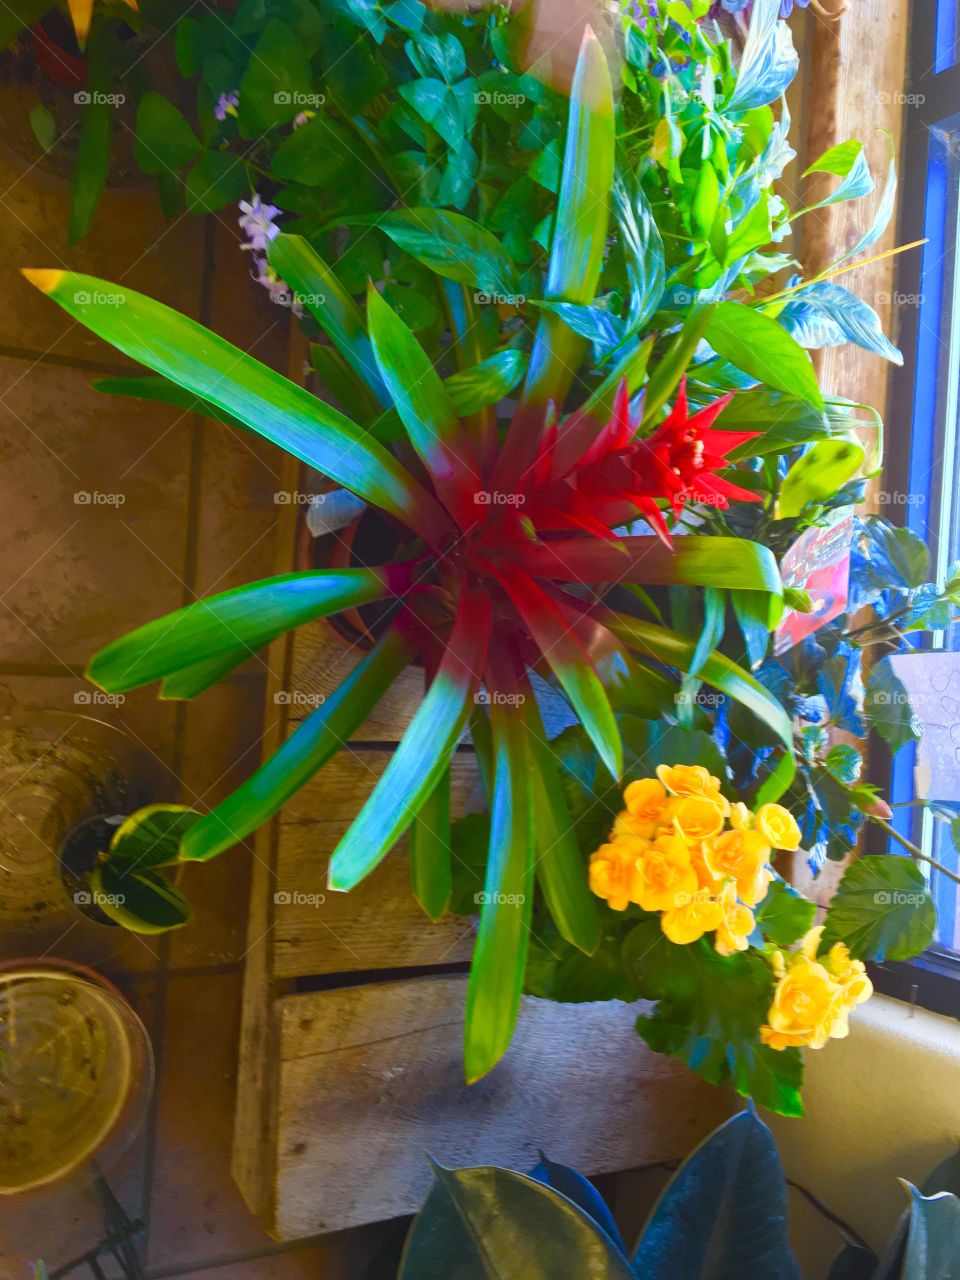 Bromeliads flower